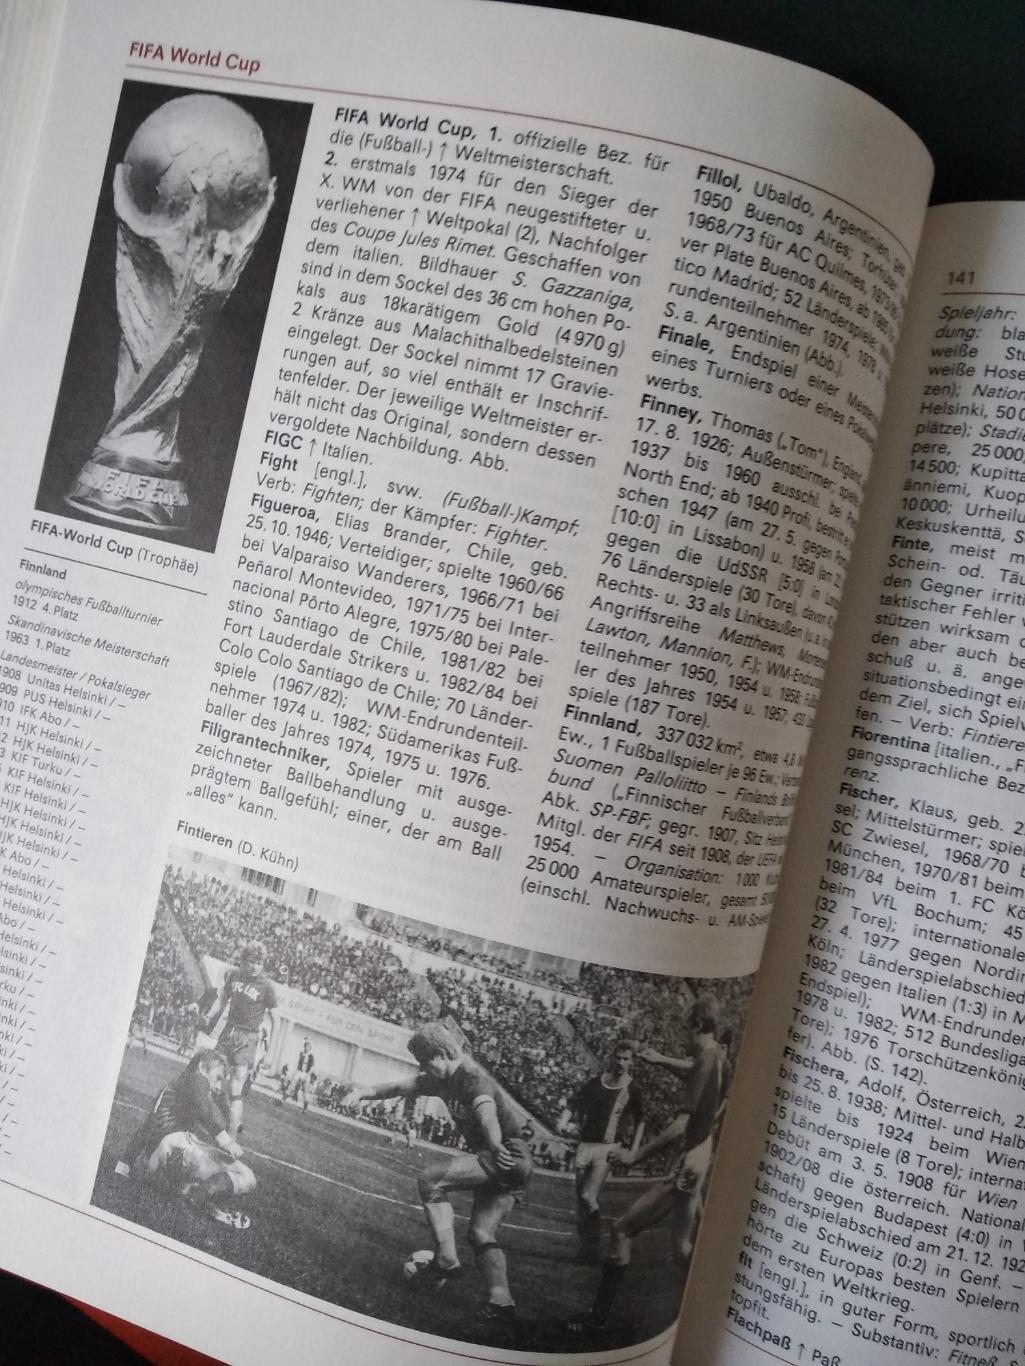 Футбольный словарь. Немецкий яз. Лейпциг (ГДР). 1988 г. Супер/обложка. 448 стр. 5